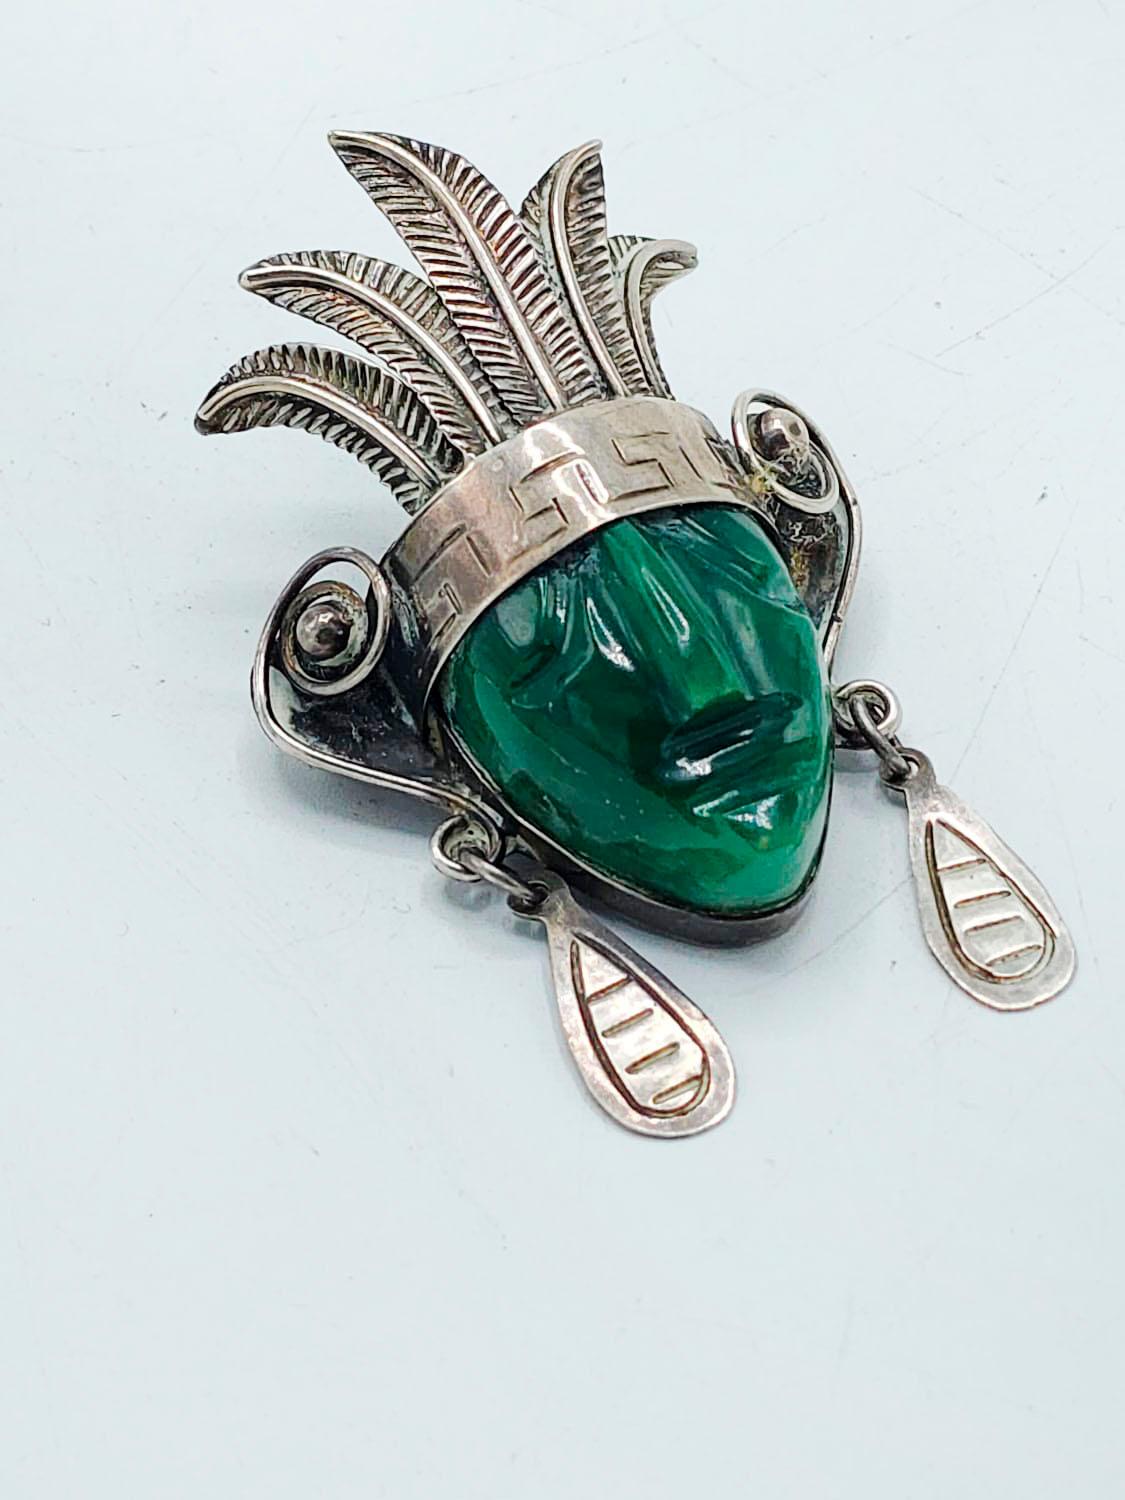 Taxco Sterling Maske Brosche mit großen grünen Achat und gestempelt Details

Die Brosche aus 925er Silber mit geschnitzten Details und grünem Achatstein von einer alten mexikanischen Maske ist ein wunderschönes Stück, das für sich allein steht.
